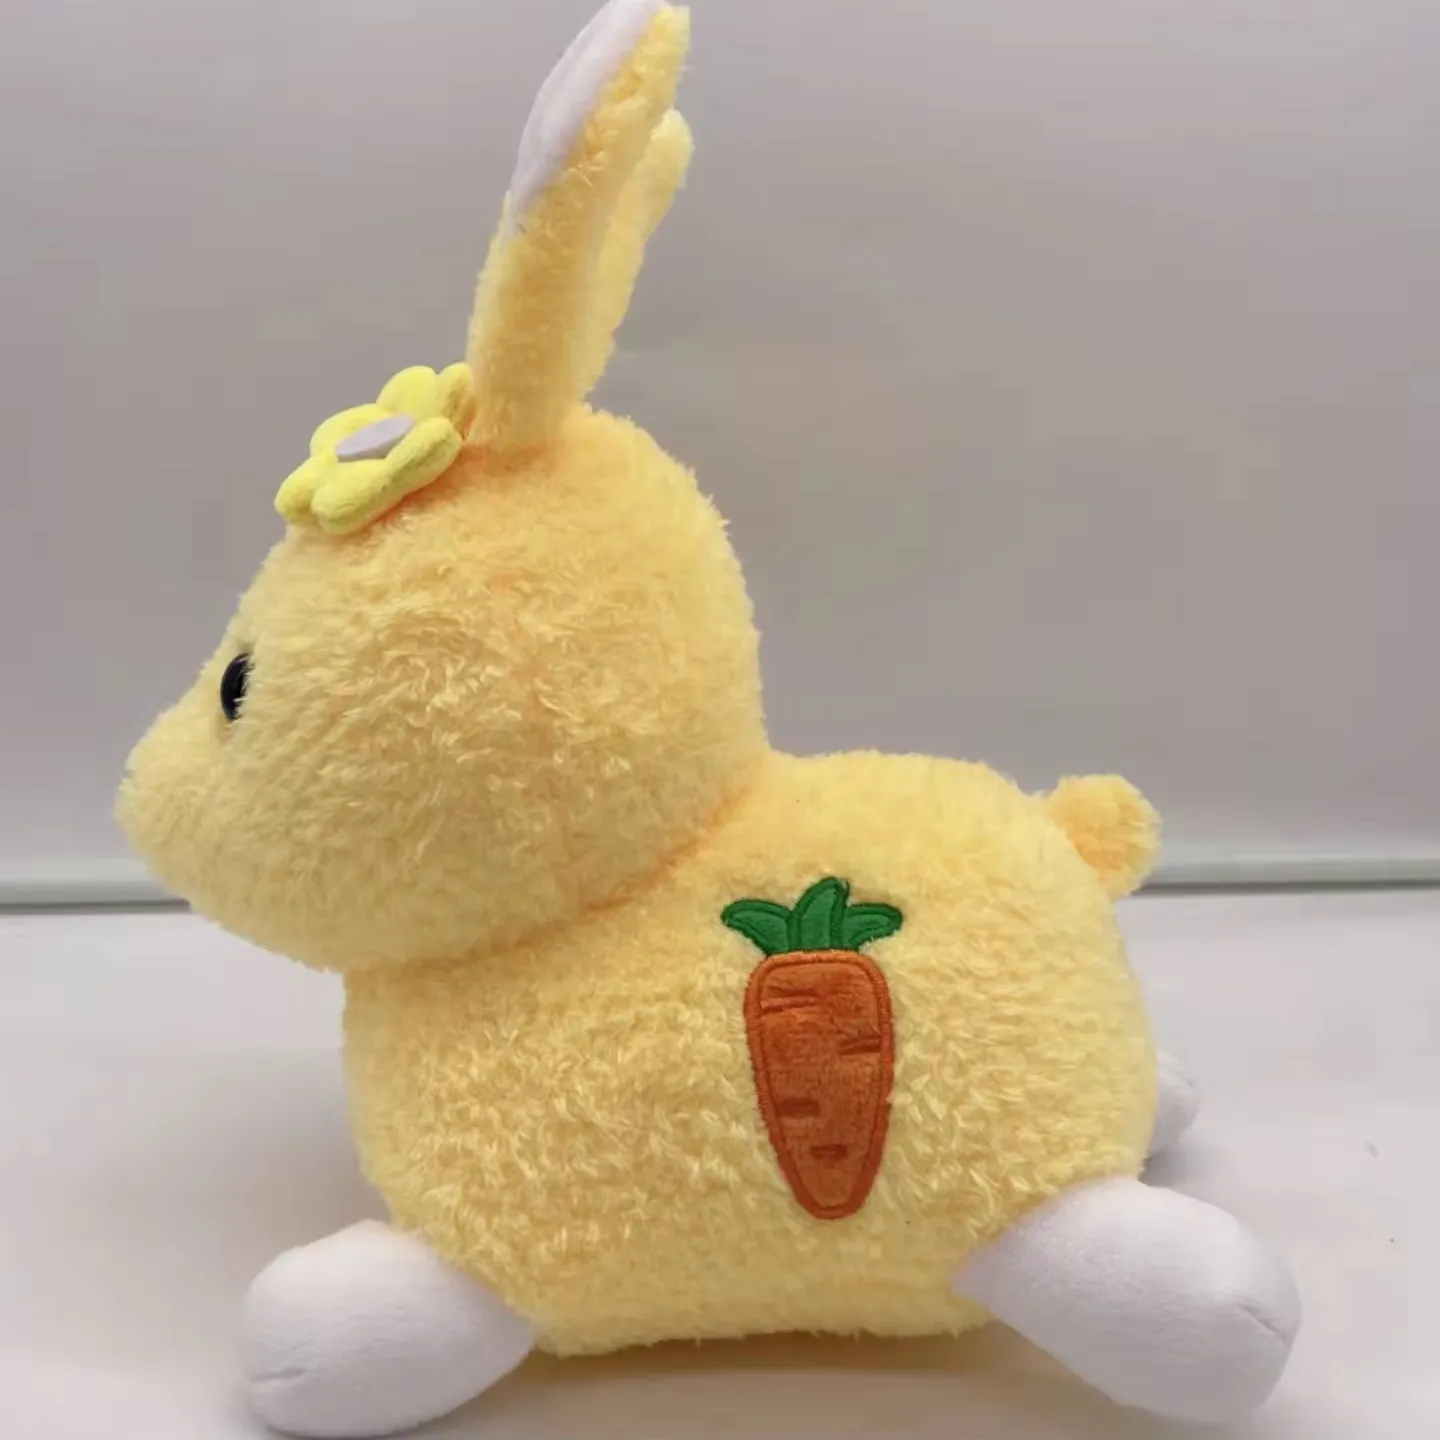 매우 멋진 웨딩 인형 경향이있는 위치 토끼 인형 봉제 장난감 선물